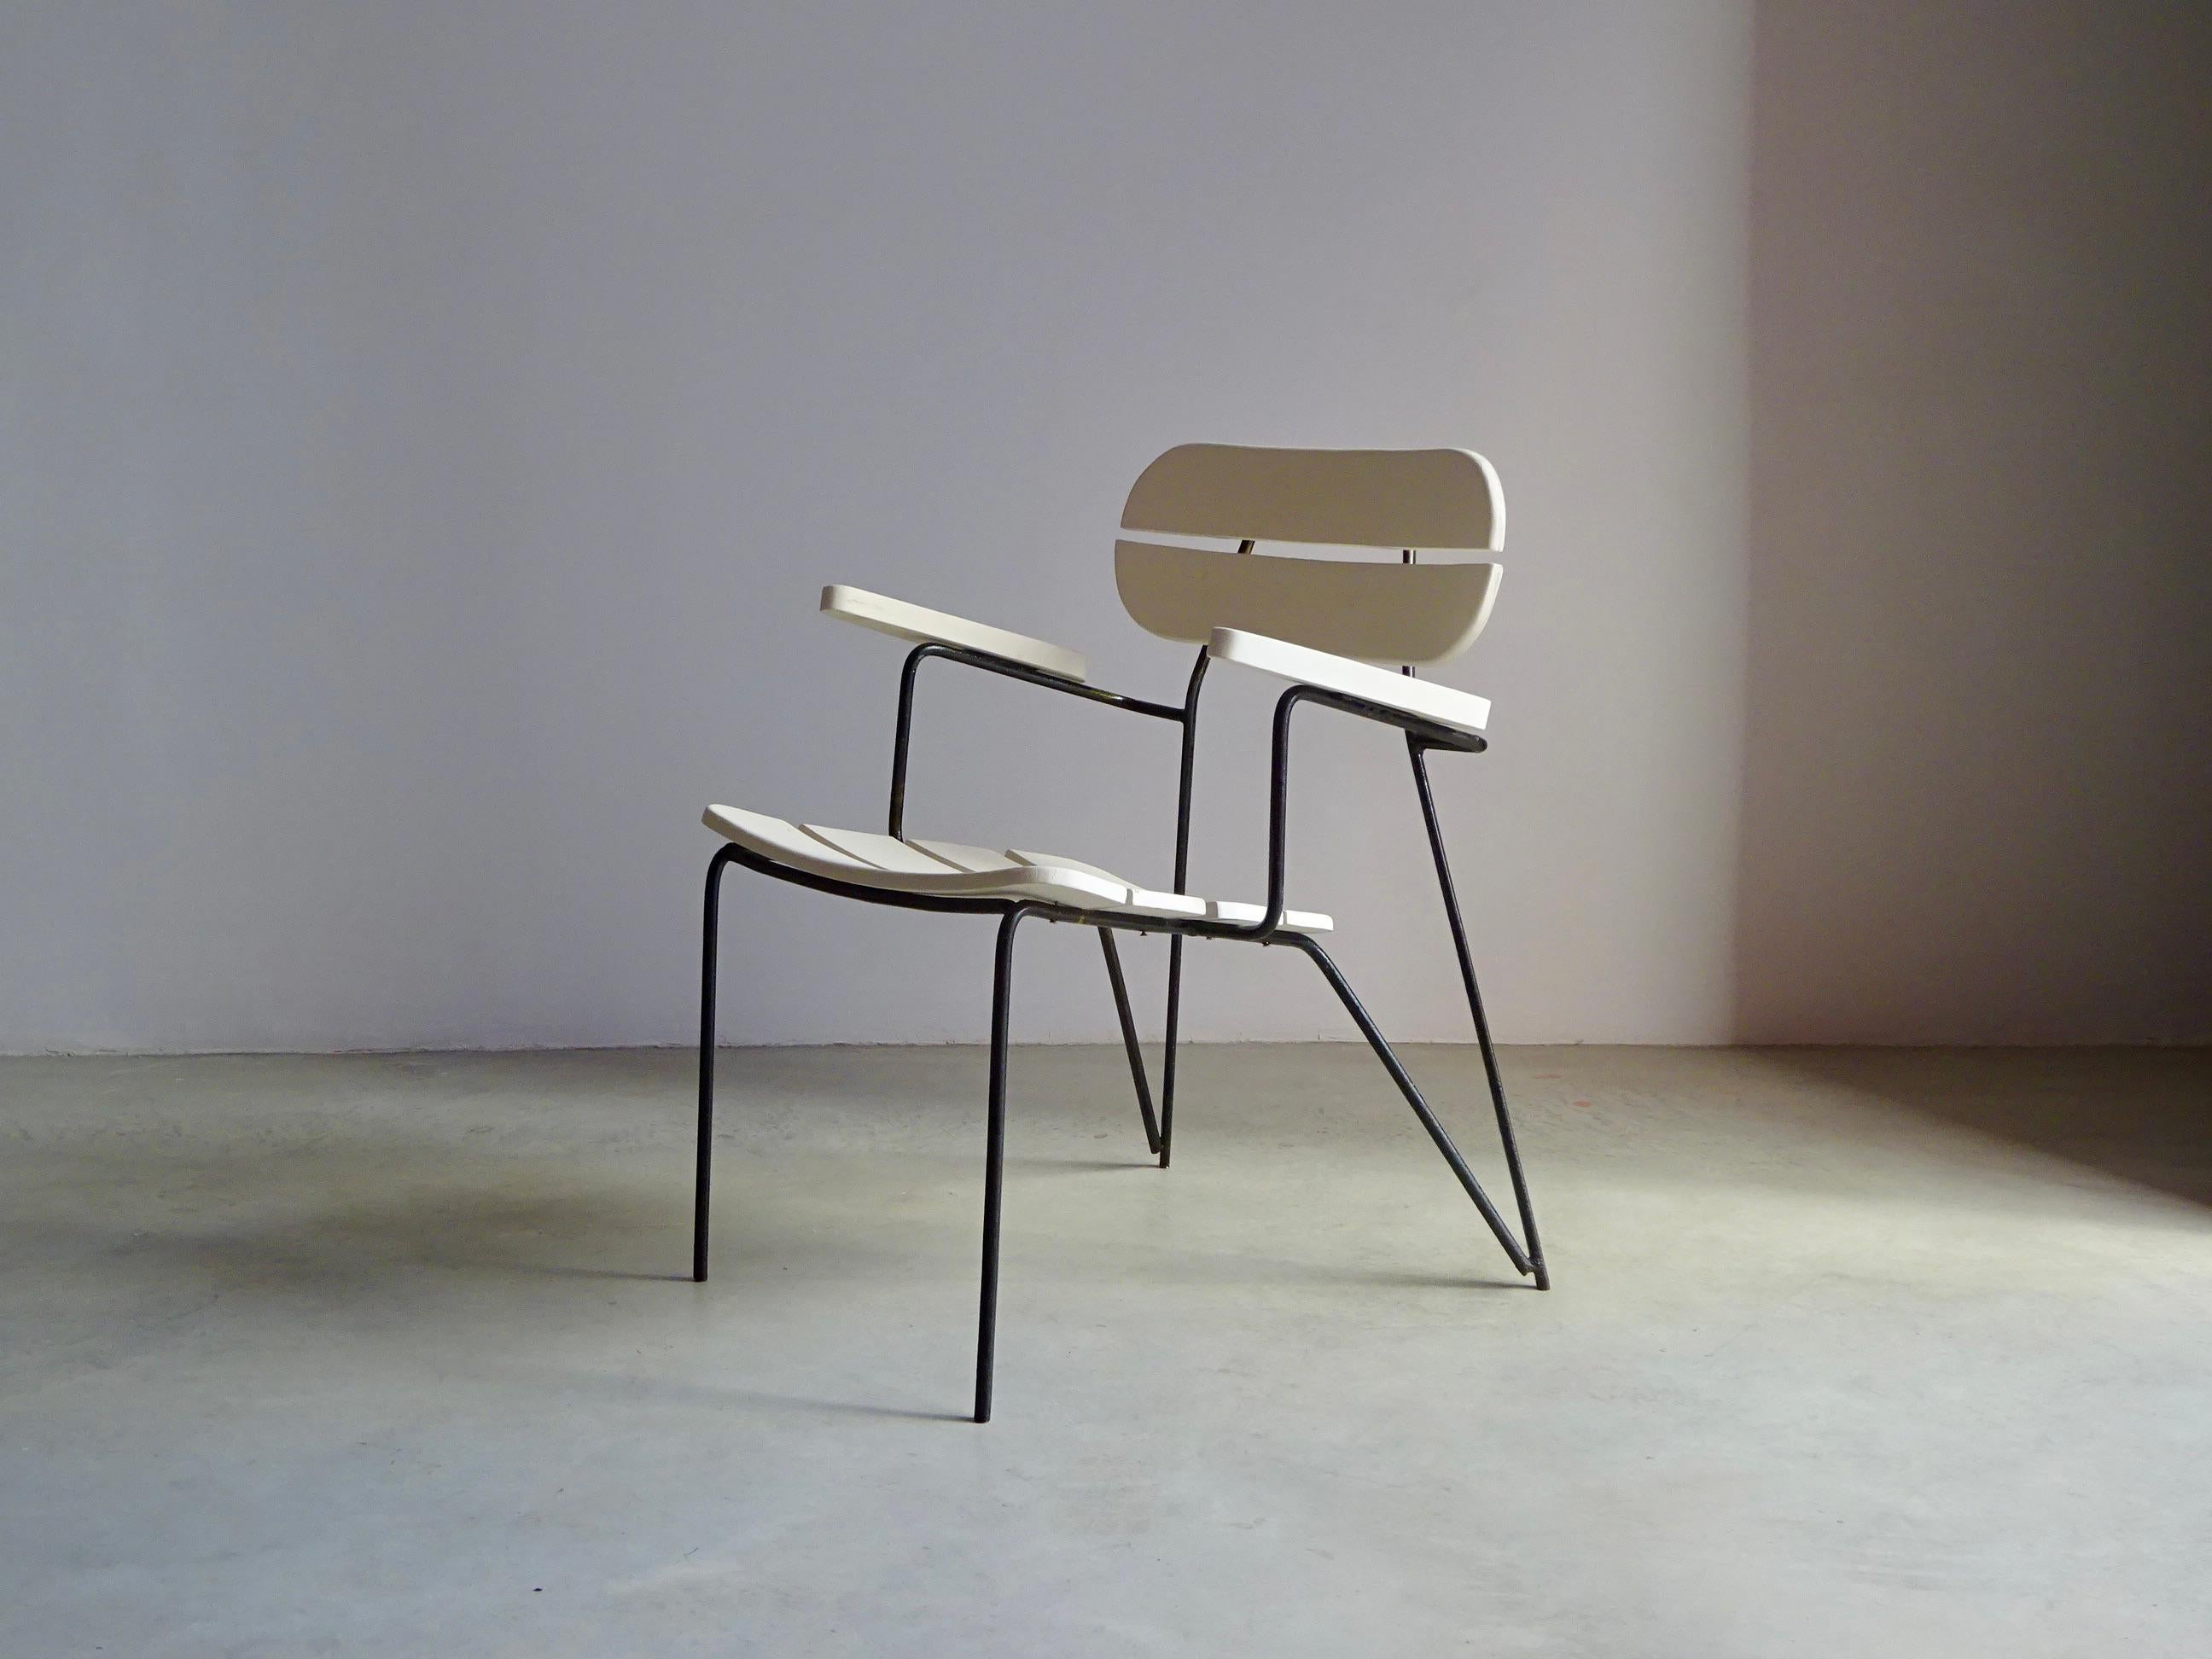 Paire de fauteuils d'extérieur conçus par Martin Eisler et Carlo Hauner, fabriqués par Forma S/A au Brésil au début des années 1950. La structure est en acier massif, la coque ergonomique est en bois massif peint.

Les caractéristiques de ces grands